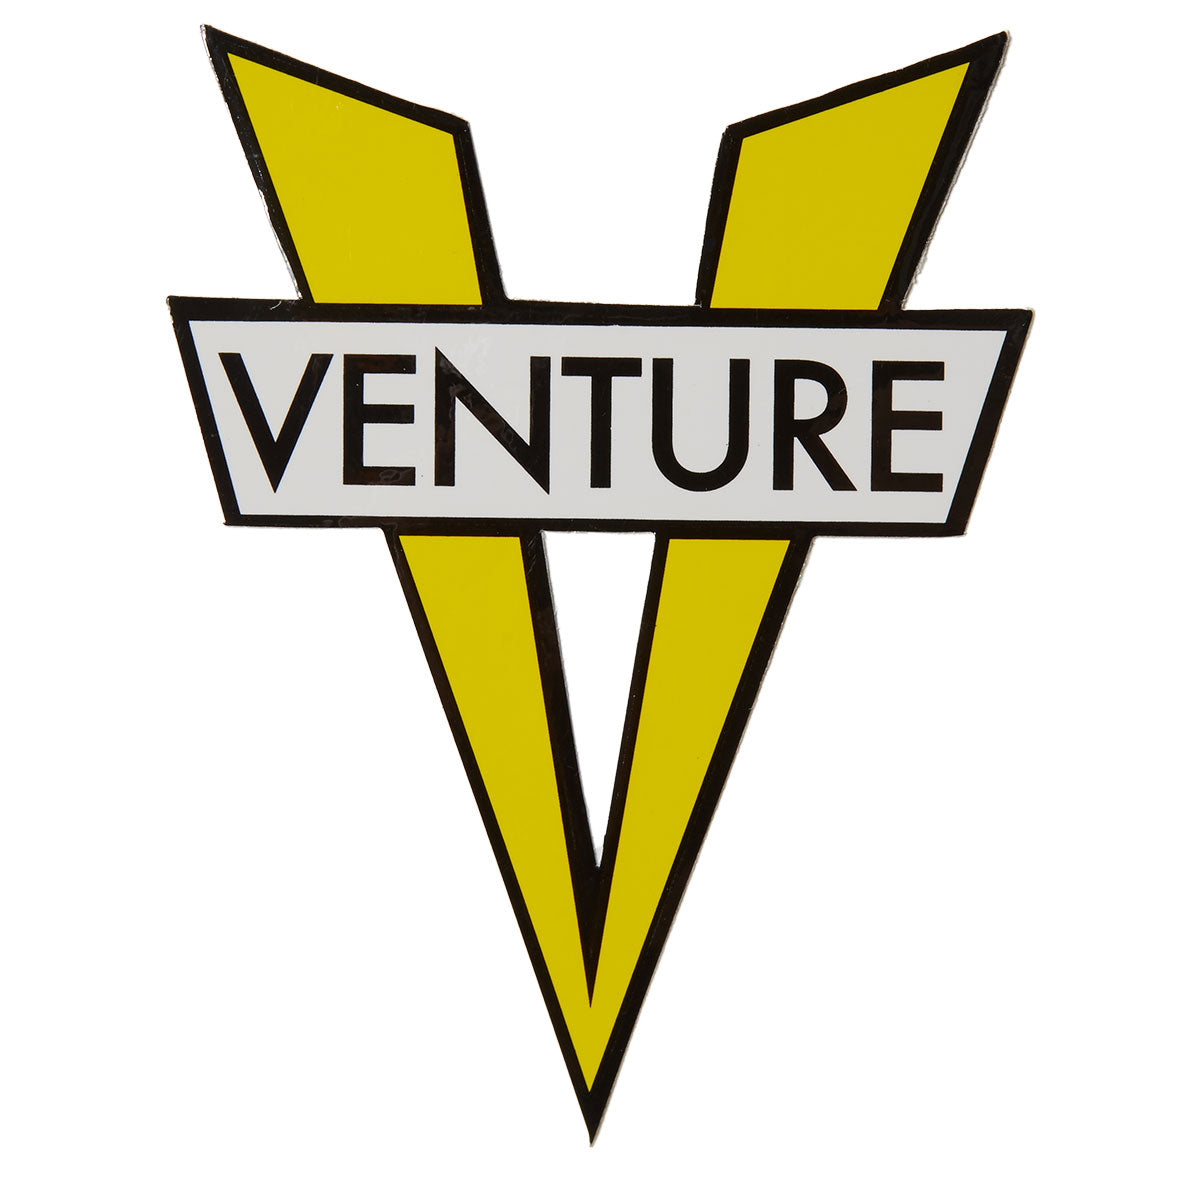 Venture V Die-Cut MD Sticker - Yellow image 1